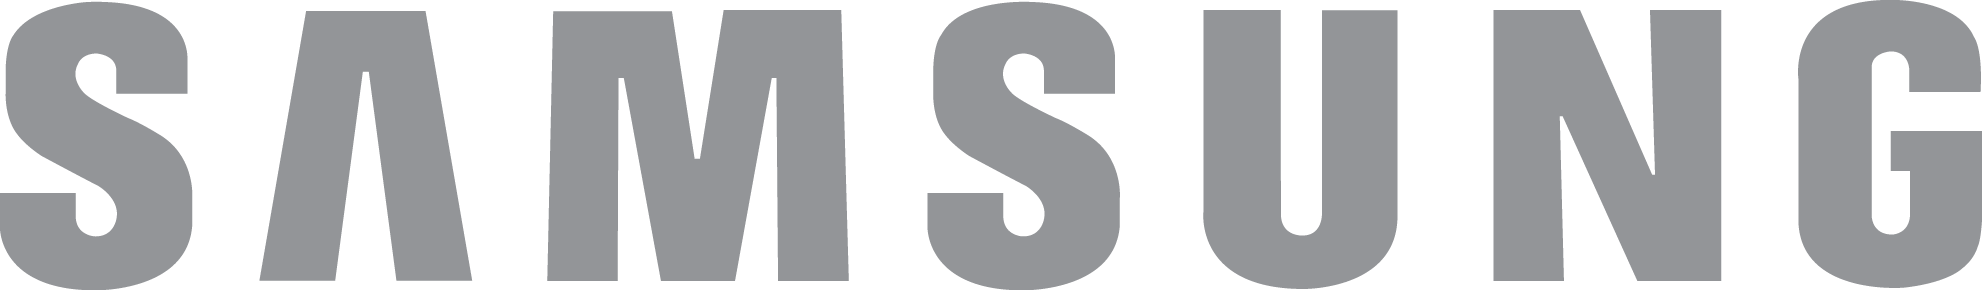 Samsung Logo_Gray.png